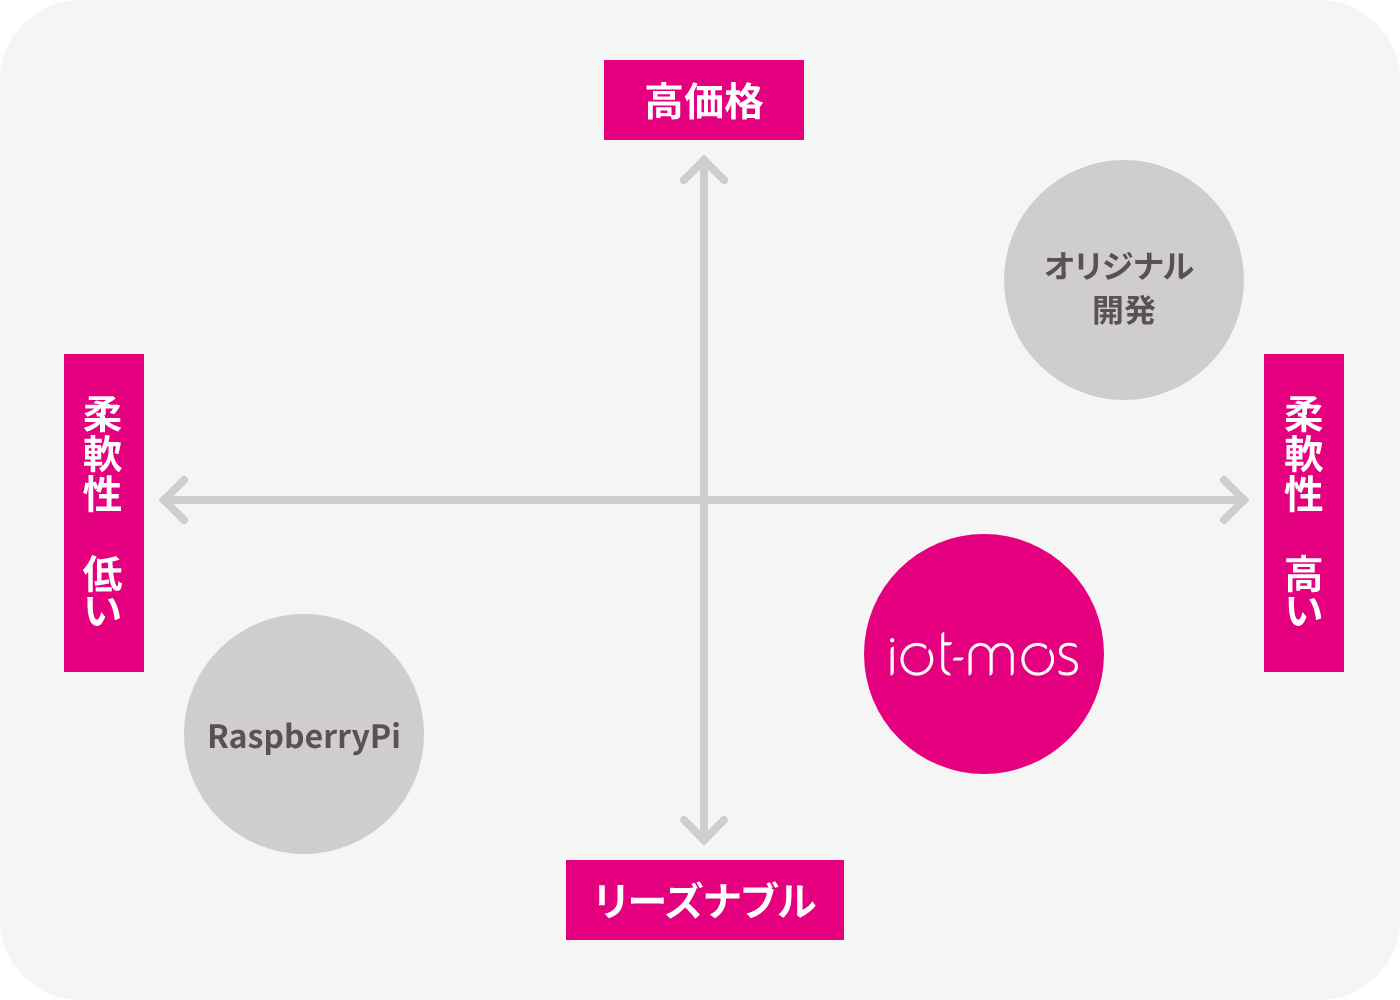 RaspberryPi・オリジナル開発と比較したiot-mosの位置付け図